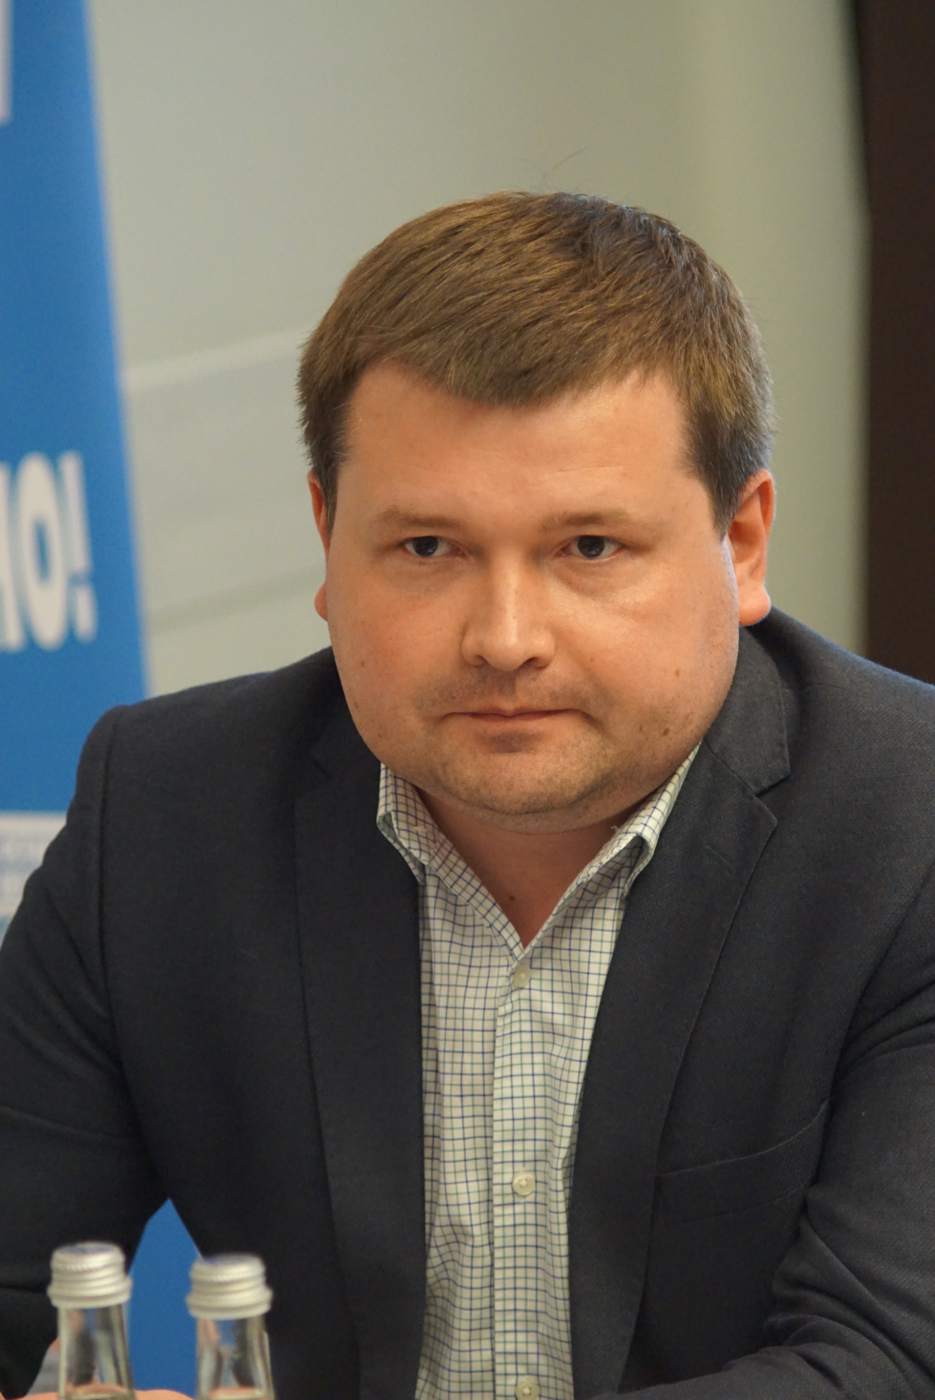 Смирнов Денис Борисович — начальник управления по работе с партнерами Балтинвестбанк